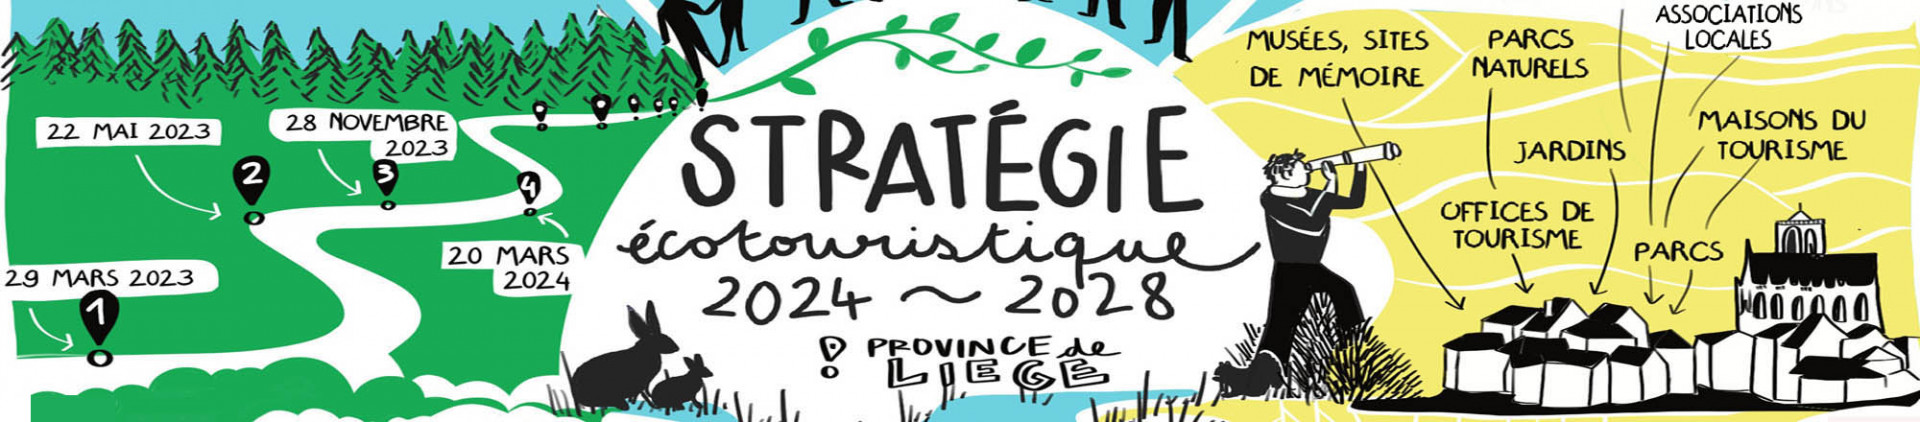 Communiquer sur la stratégie - #Réseauter